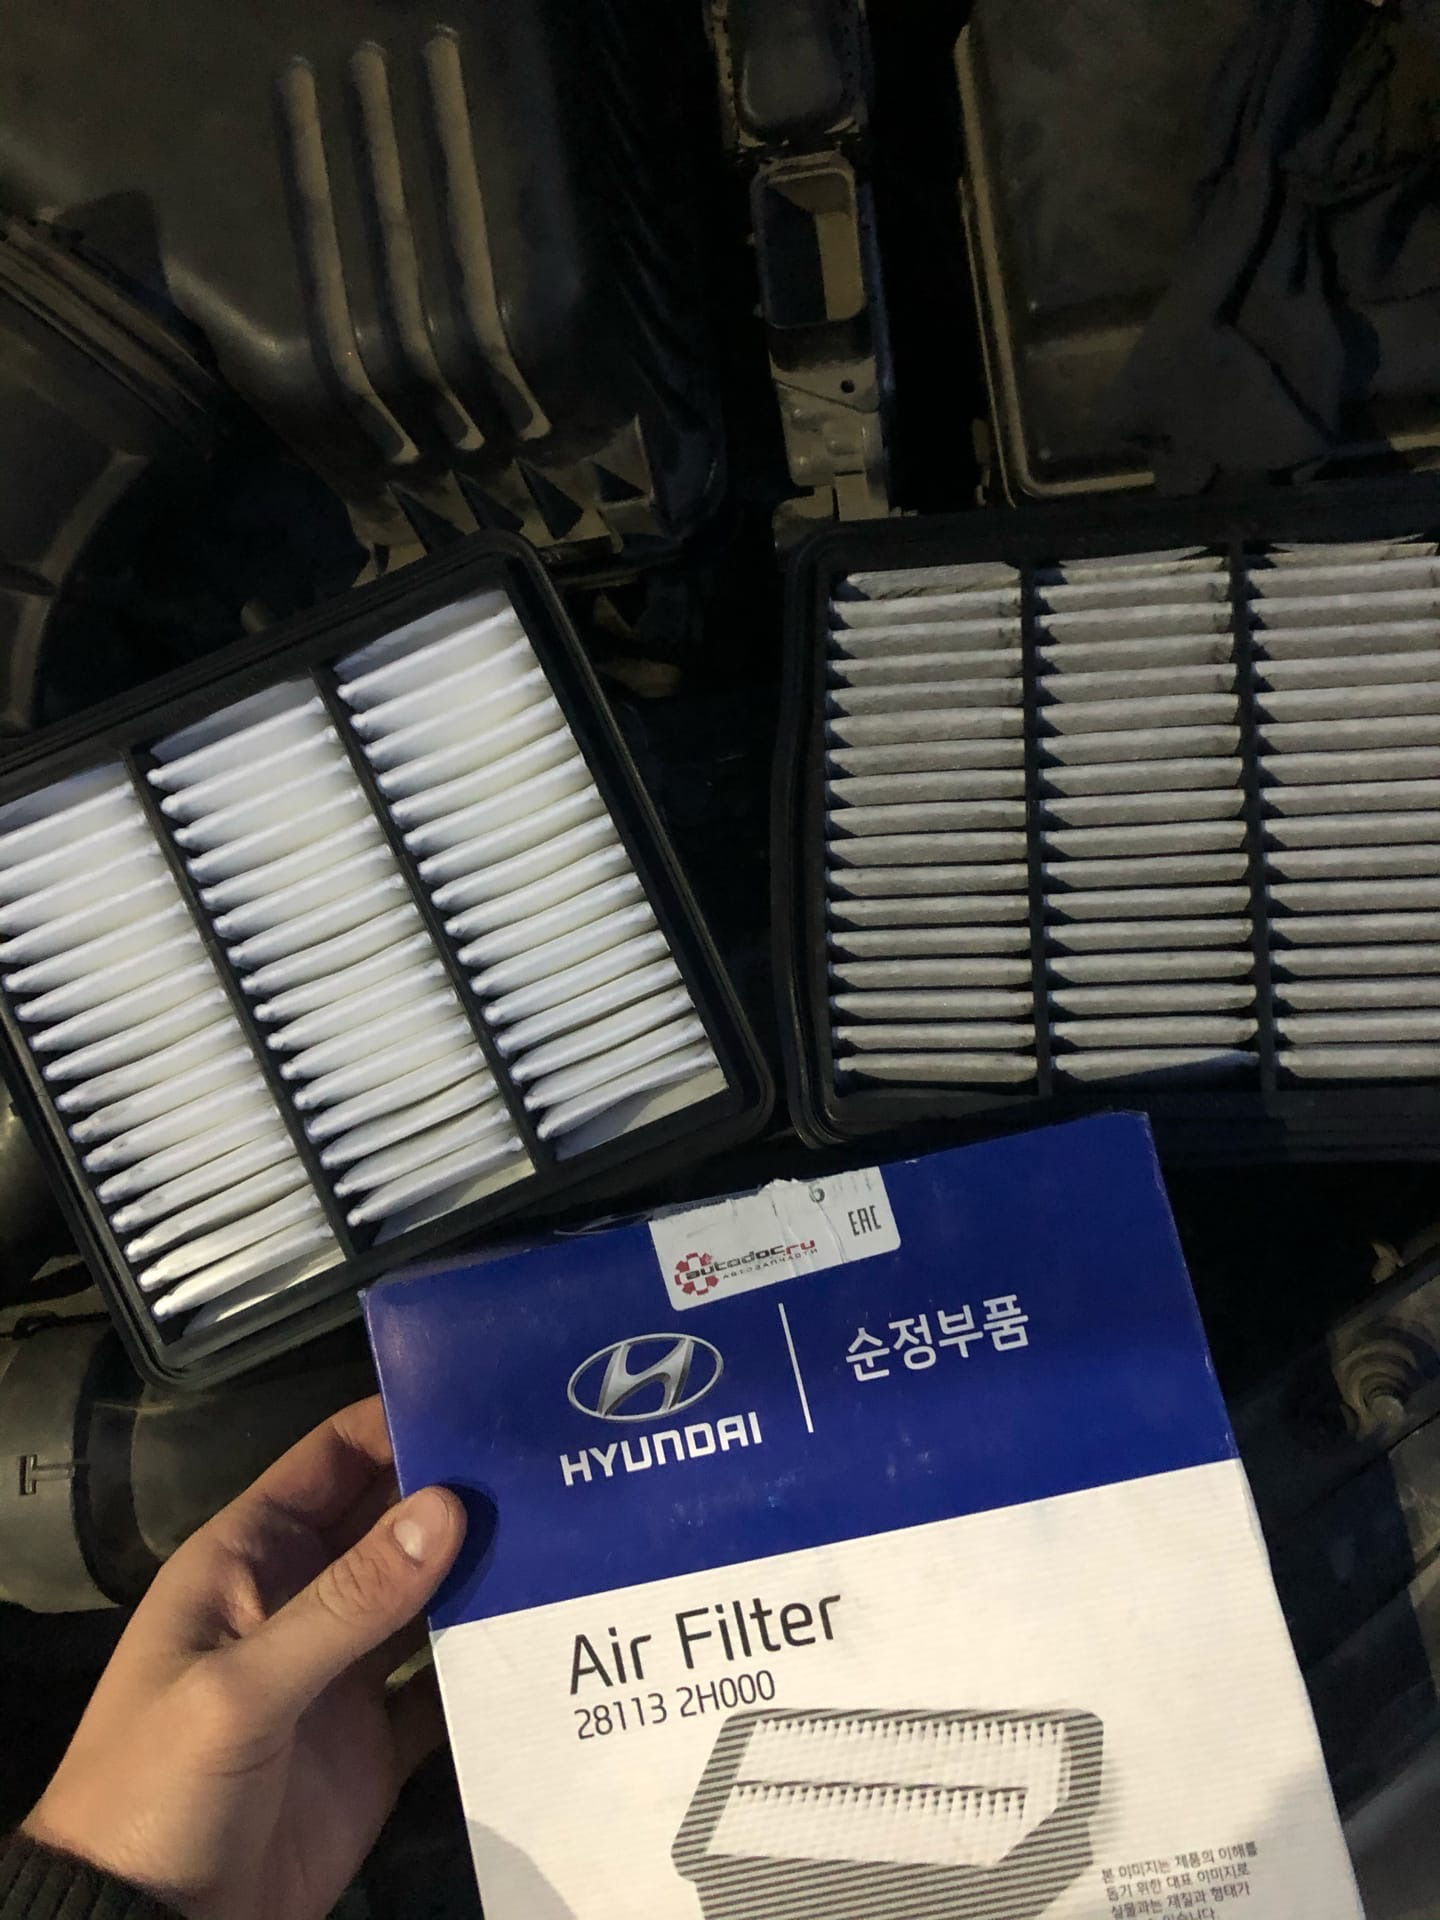 Воздушные фильтры для Hyundai Elantra gl. 281132h000. Neoo фильтра на Хендай. Корпус пилотного фильтра Хендай. Пробег воздушного фильтра